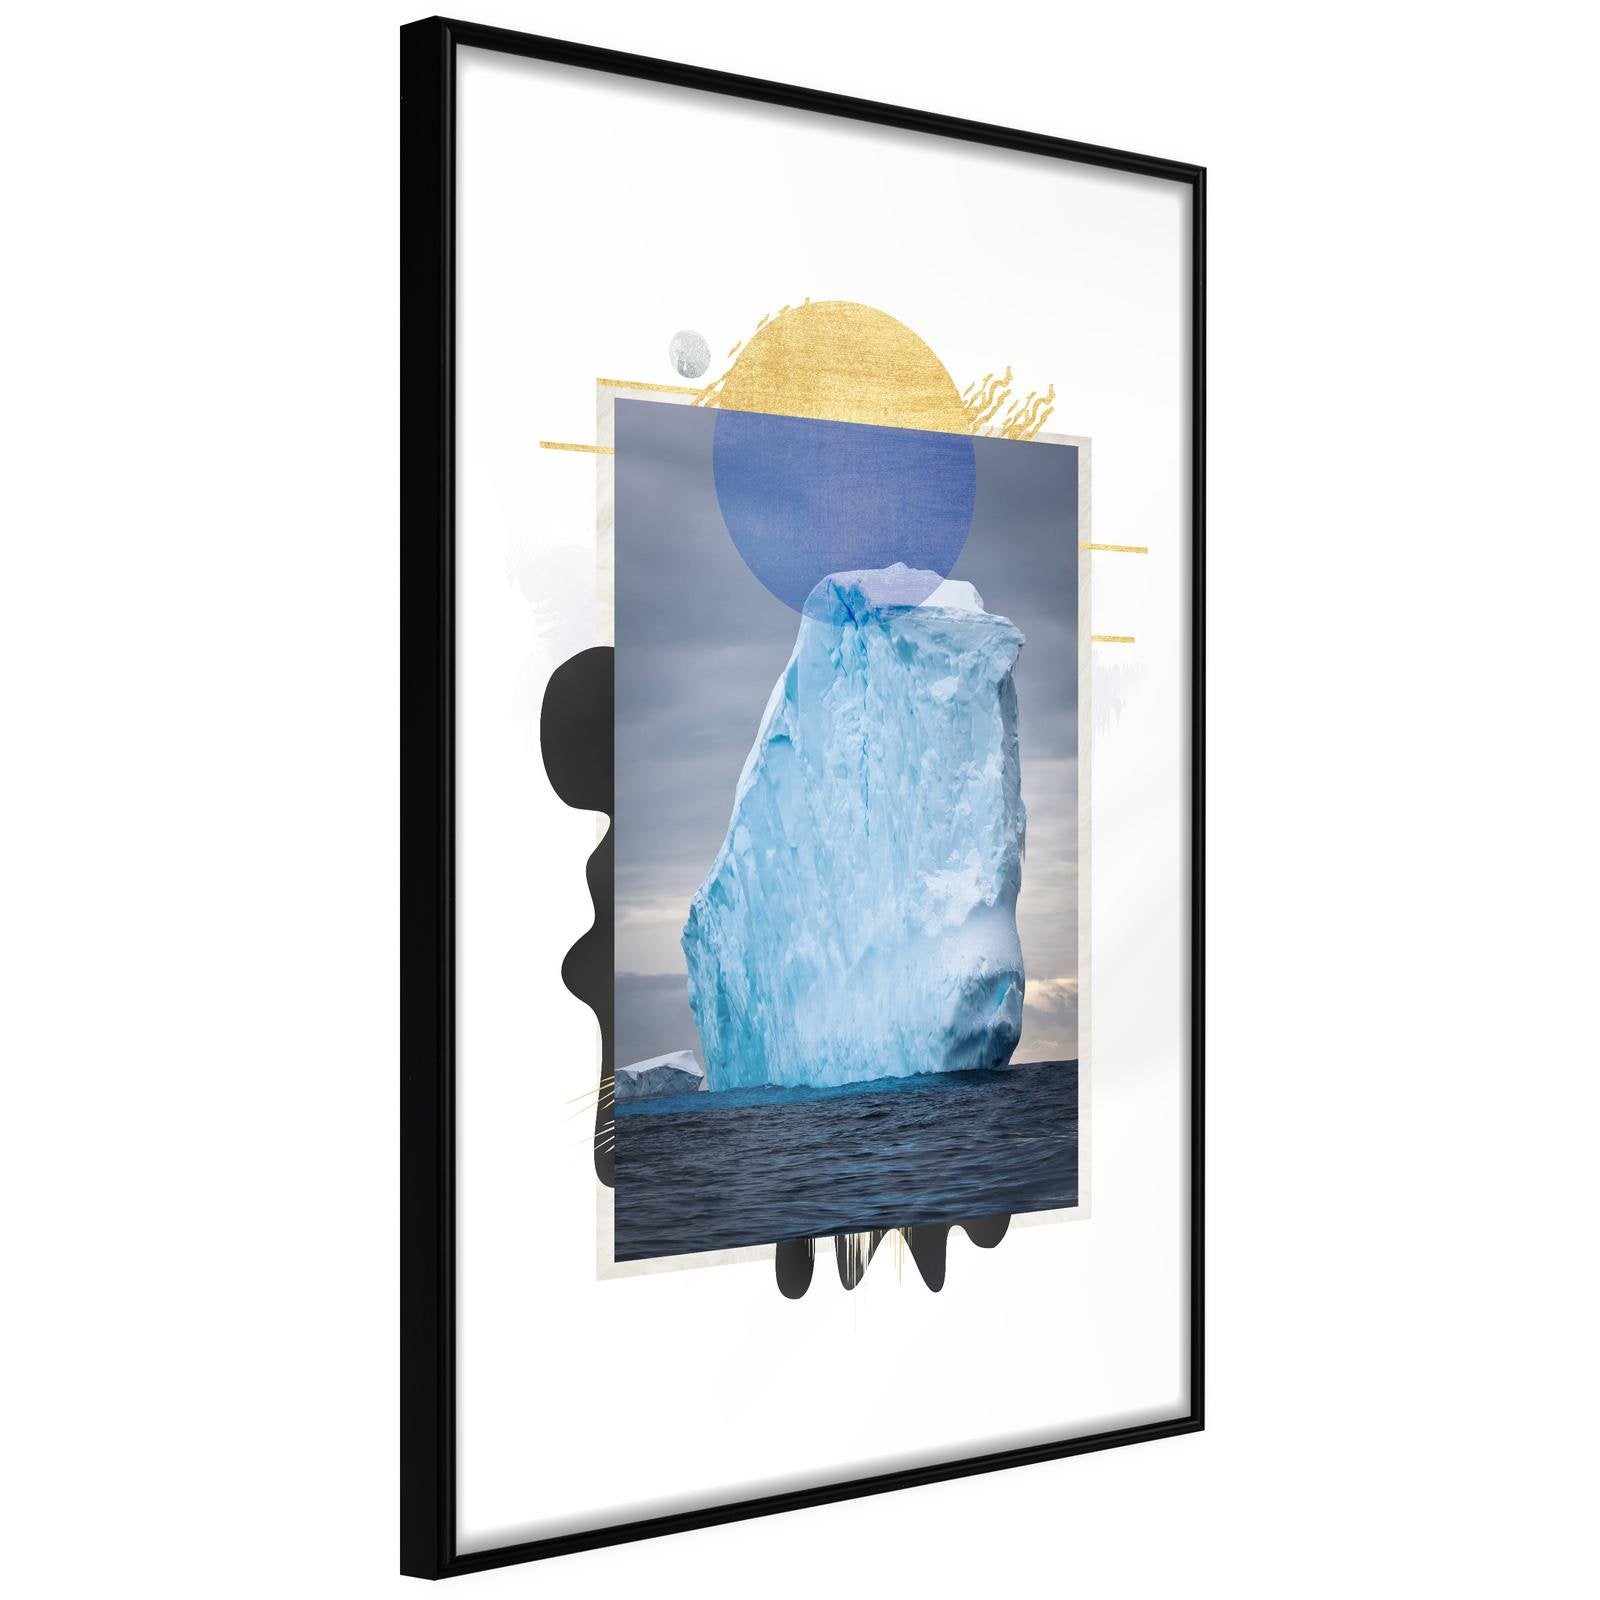 Inramad Poster / Tavla - Tip of the Iceberg-Poster Inramad-Artgeist-20x30-Svart ram-peaceofhome.se